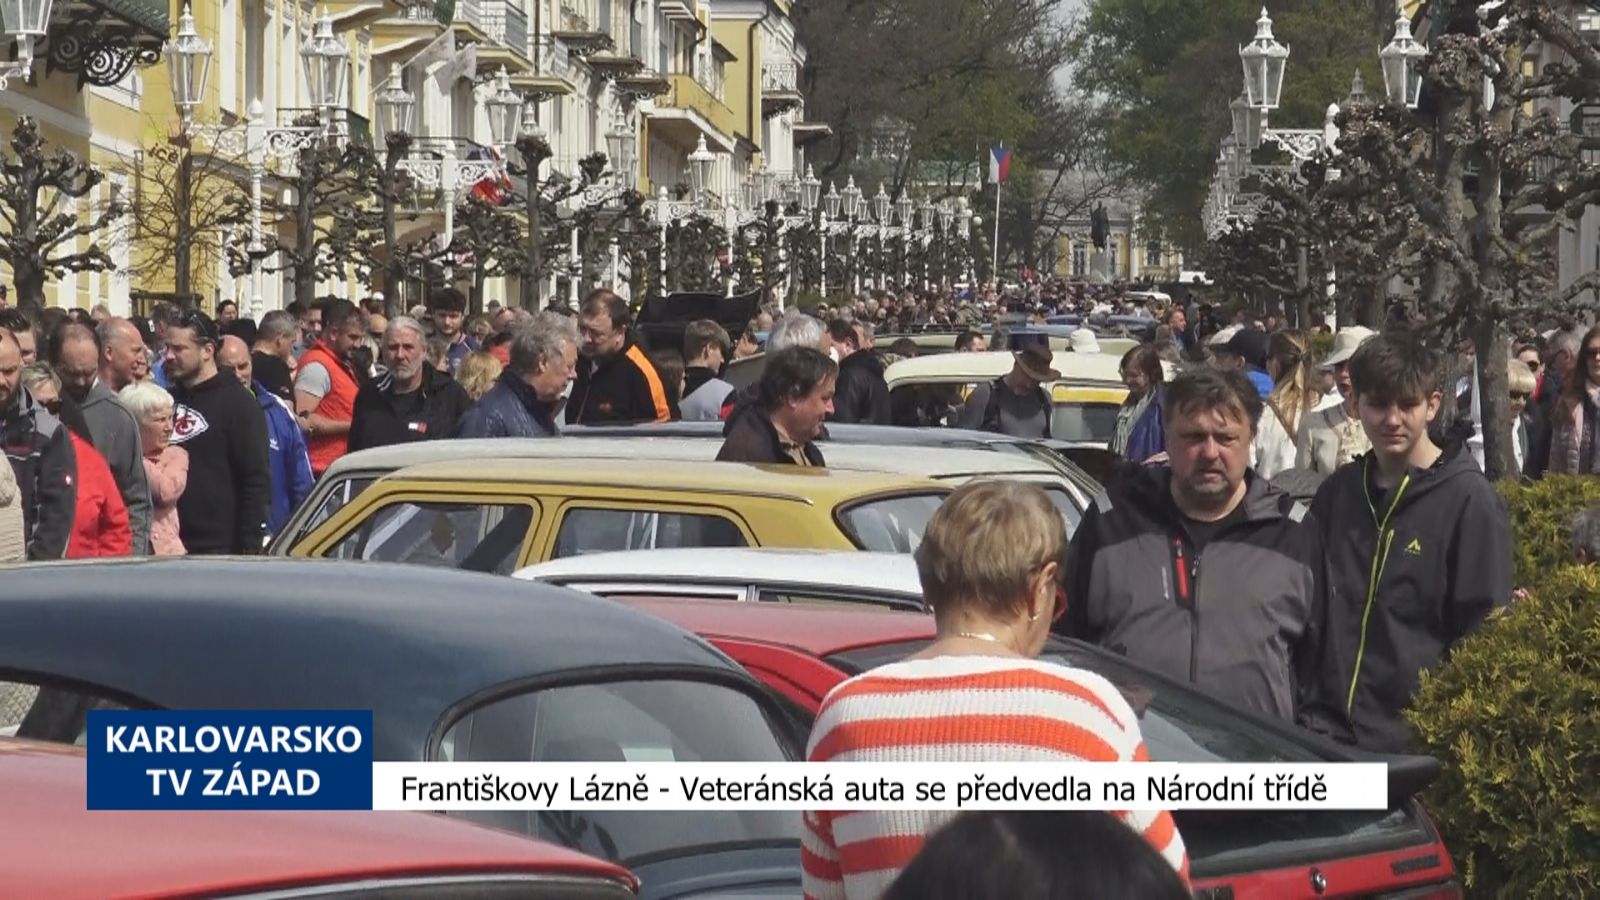 Františkovy Lázně: Veteránská auta se předvedla na Národní třídě (TV Západ)